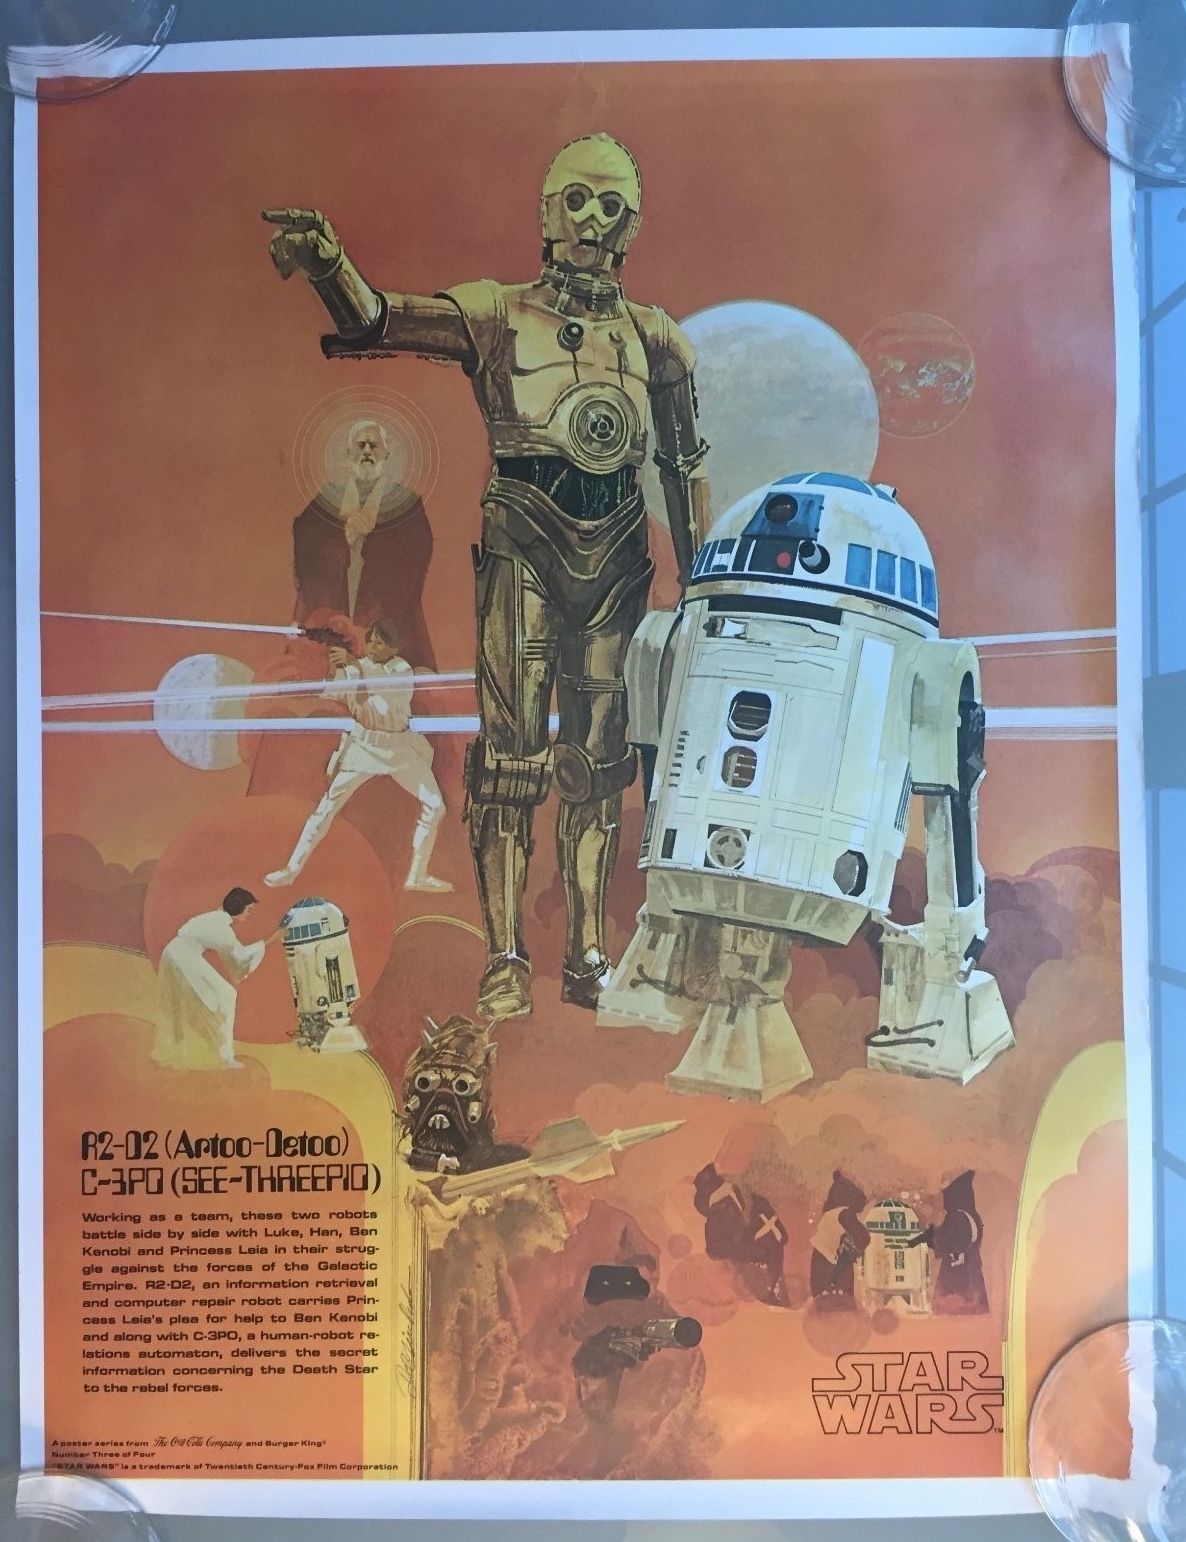 Original Vintage 1977 Star Wars Coca Cola R2-D2 & C-3PO #3 of 4 Movie Poster